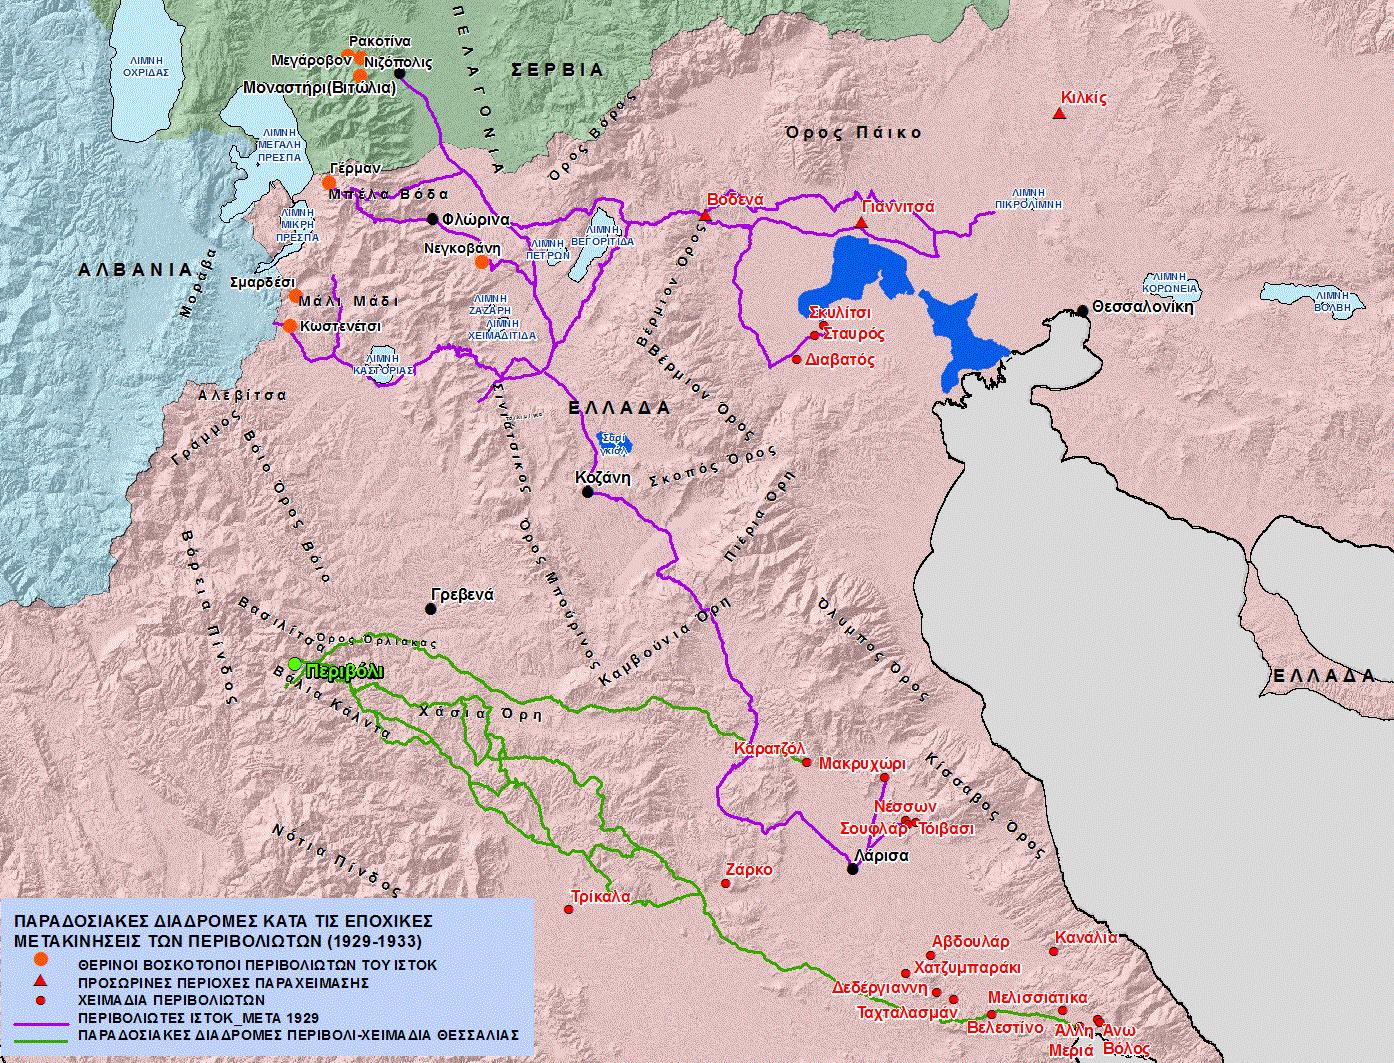 Χάρτης 8. Οι παραδοσιακές διαδρομές των Περιβολιωτών προς τα χειμαδιά Θεσσαλίας και Κεντρ. Μακεδονίας και η εξέλιξη των διαδρομών της ομάδας των Περιβολιωτών του Ιστόκ, μετά το 1929 [κλίμακα 1:750,000].